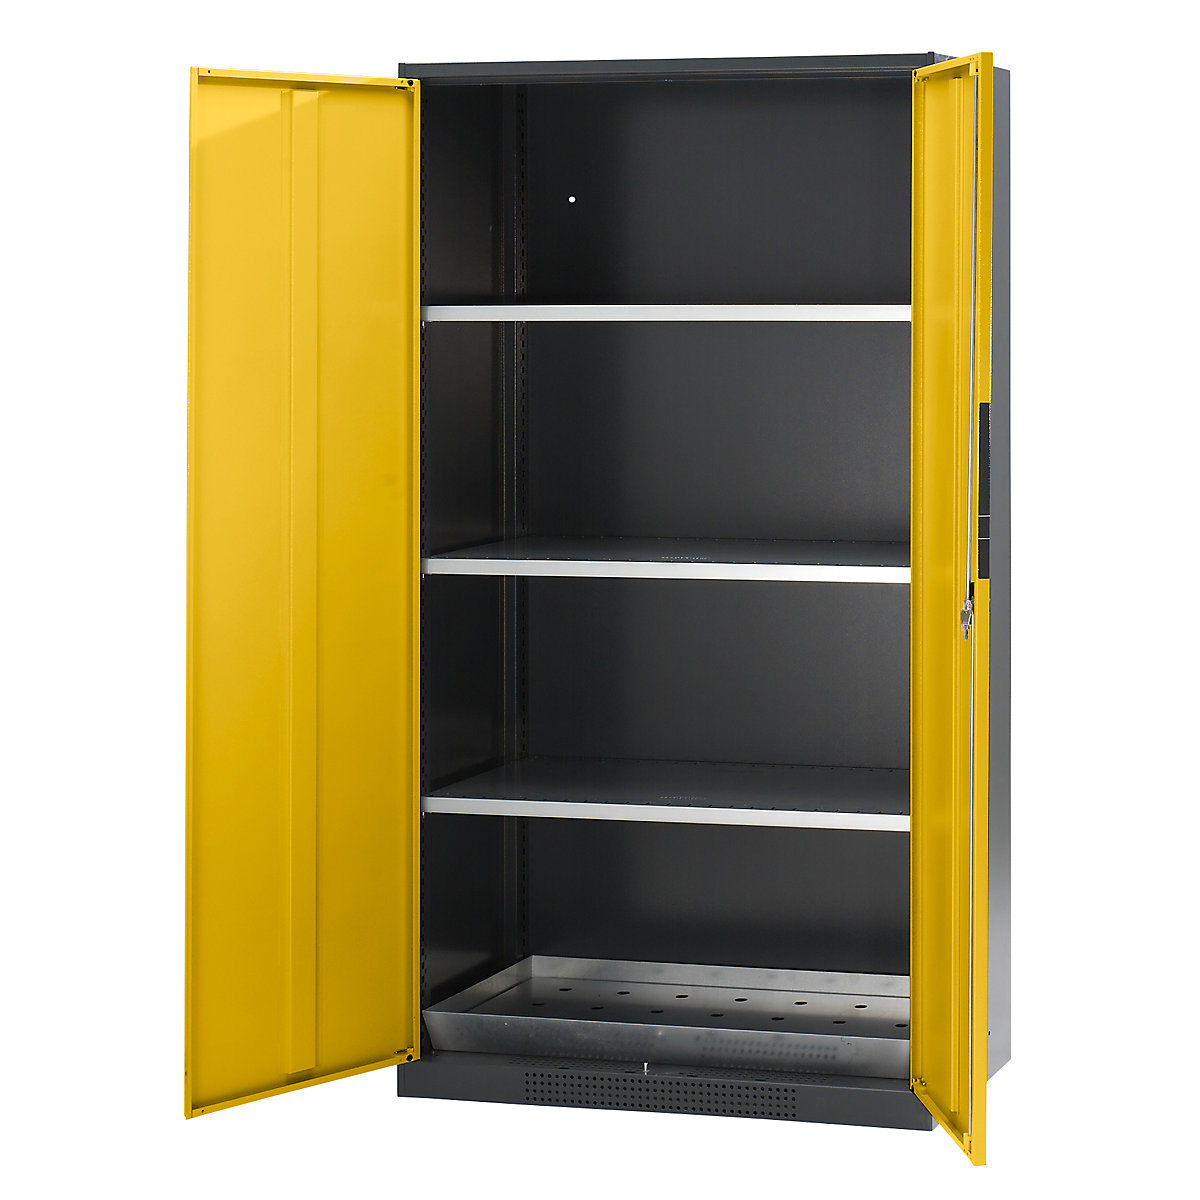 asecos – Armoire de laboratoire pour produits chimiques, 2 portes, armoire haute, 3 tablettes, sans vitre, jaune